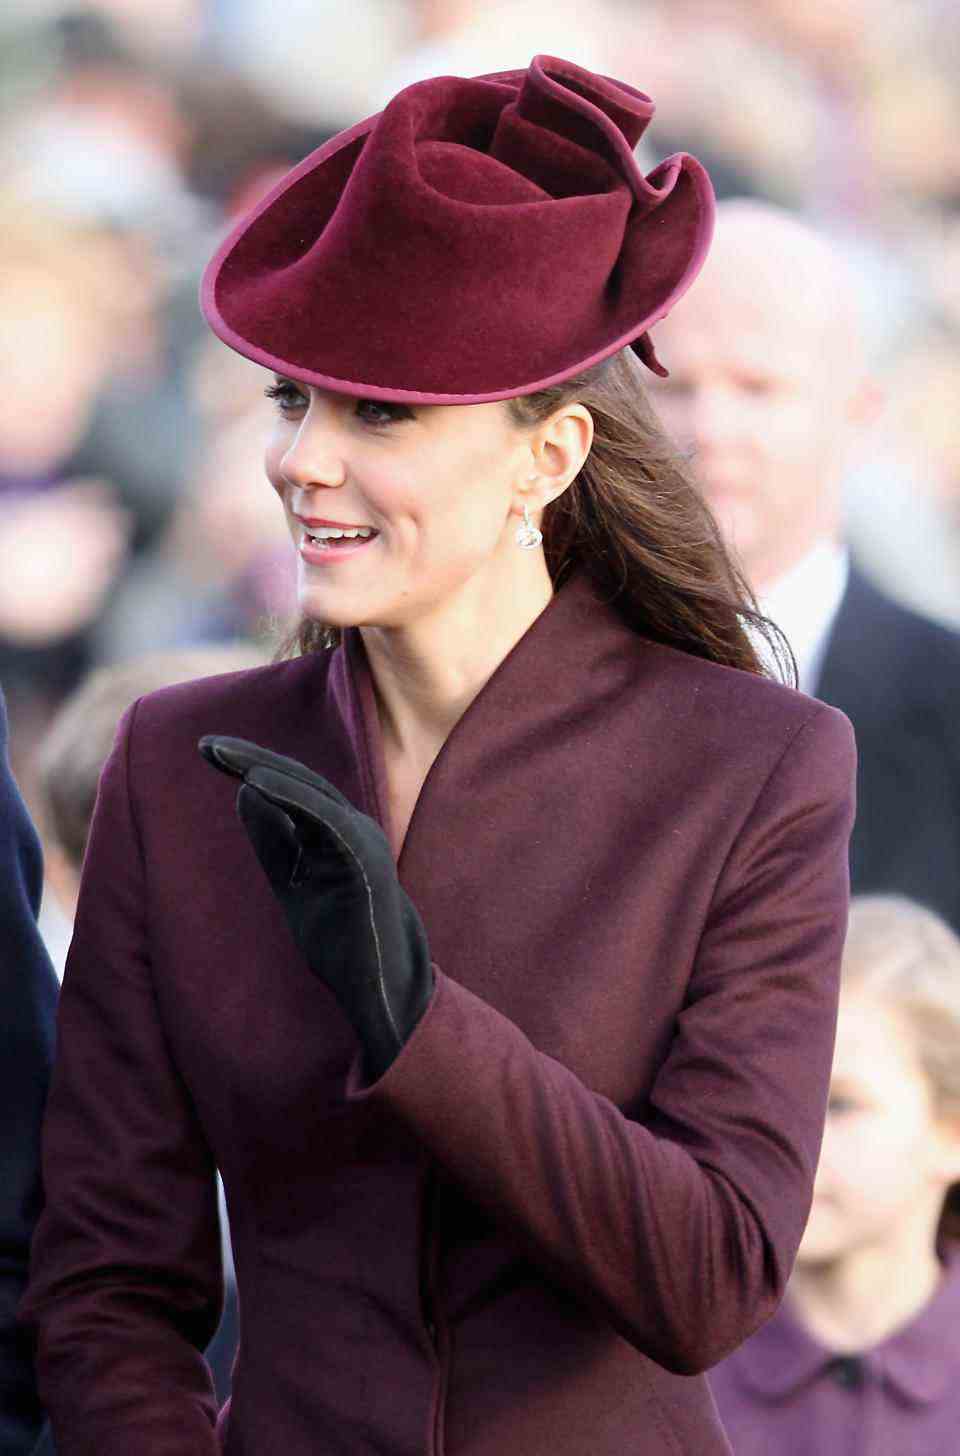 La princesse de Galles salue les sympathisants alors qu'elle se rend à l'église de Sandringham pour le service traditionnel du jour de Noël en 2011. (Getty Images)